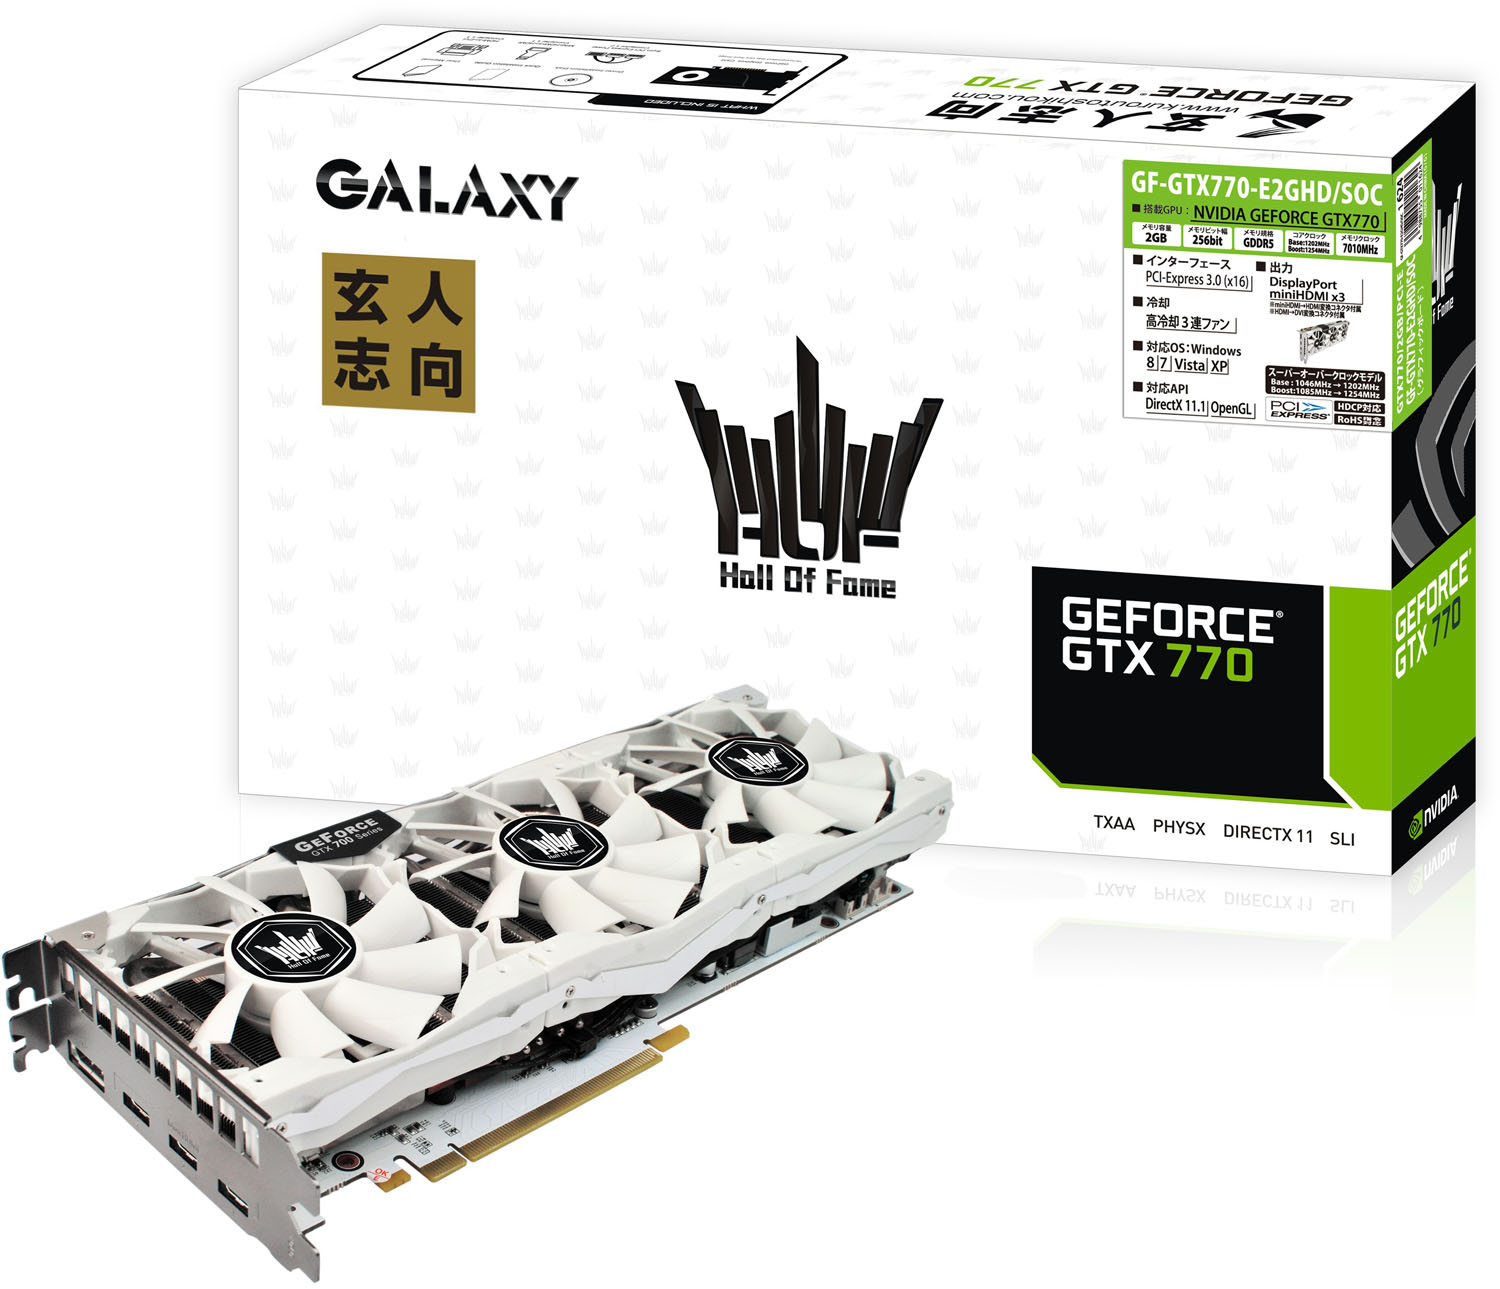 Immagine pubblicata in relazione al seguente contenuto: Galaxy realizza la video card GeForce GTX 770 Hall Of Fame Edition | Nome immagine: news19913_Expert-Oriented-Galaxy-GTX-770-Hall-Of-Fame-Edition_2.jpg